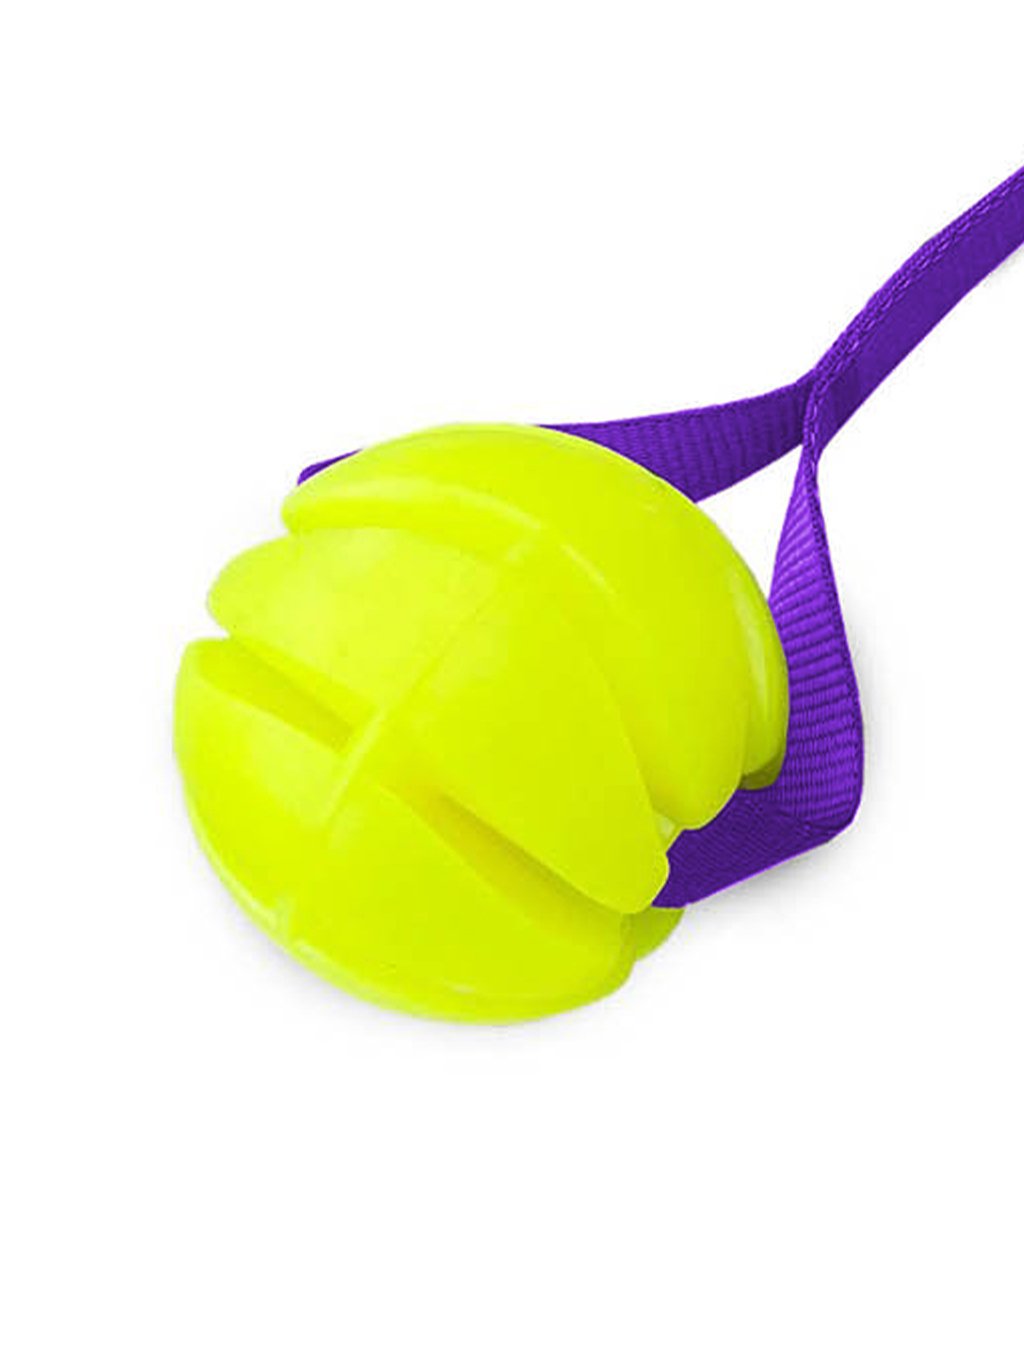 Žlutý plovoucí míček 6 cm s fialovou ručkou 4dox